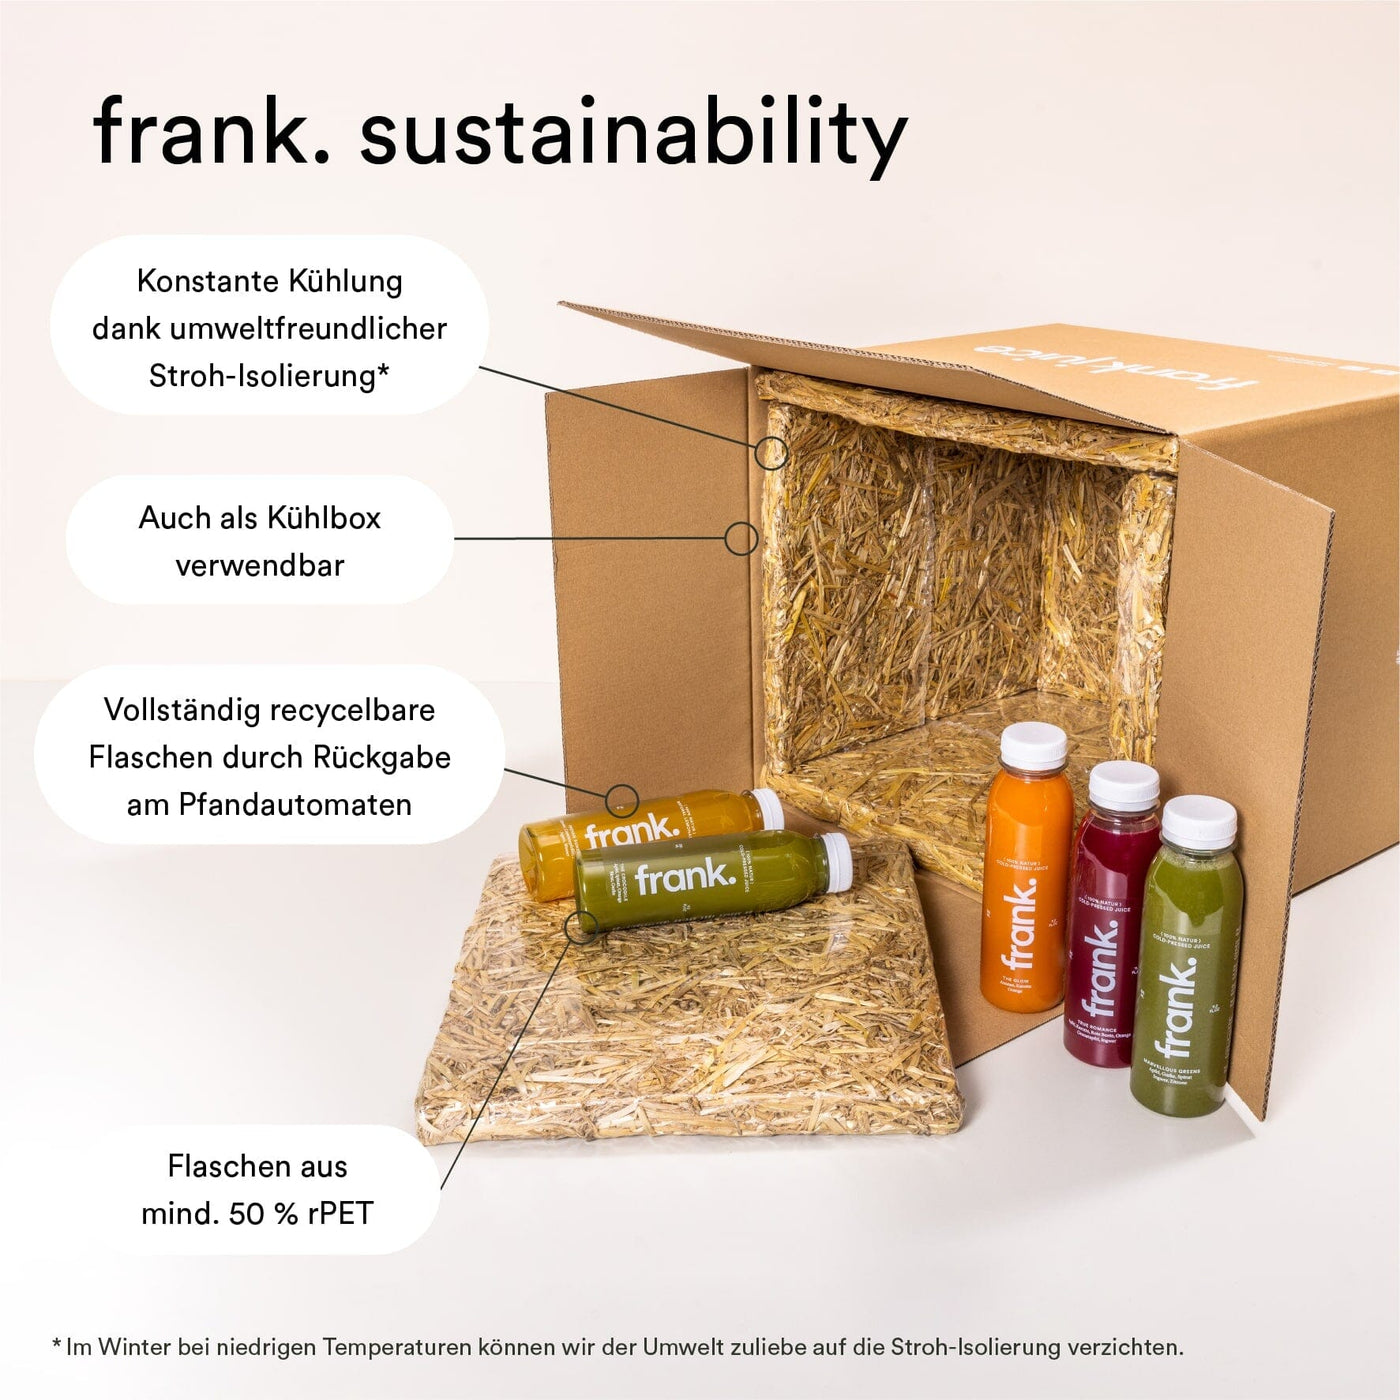 Darstellung der nachhaltigen Verpackung von frank.